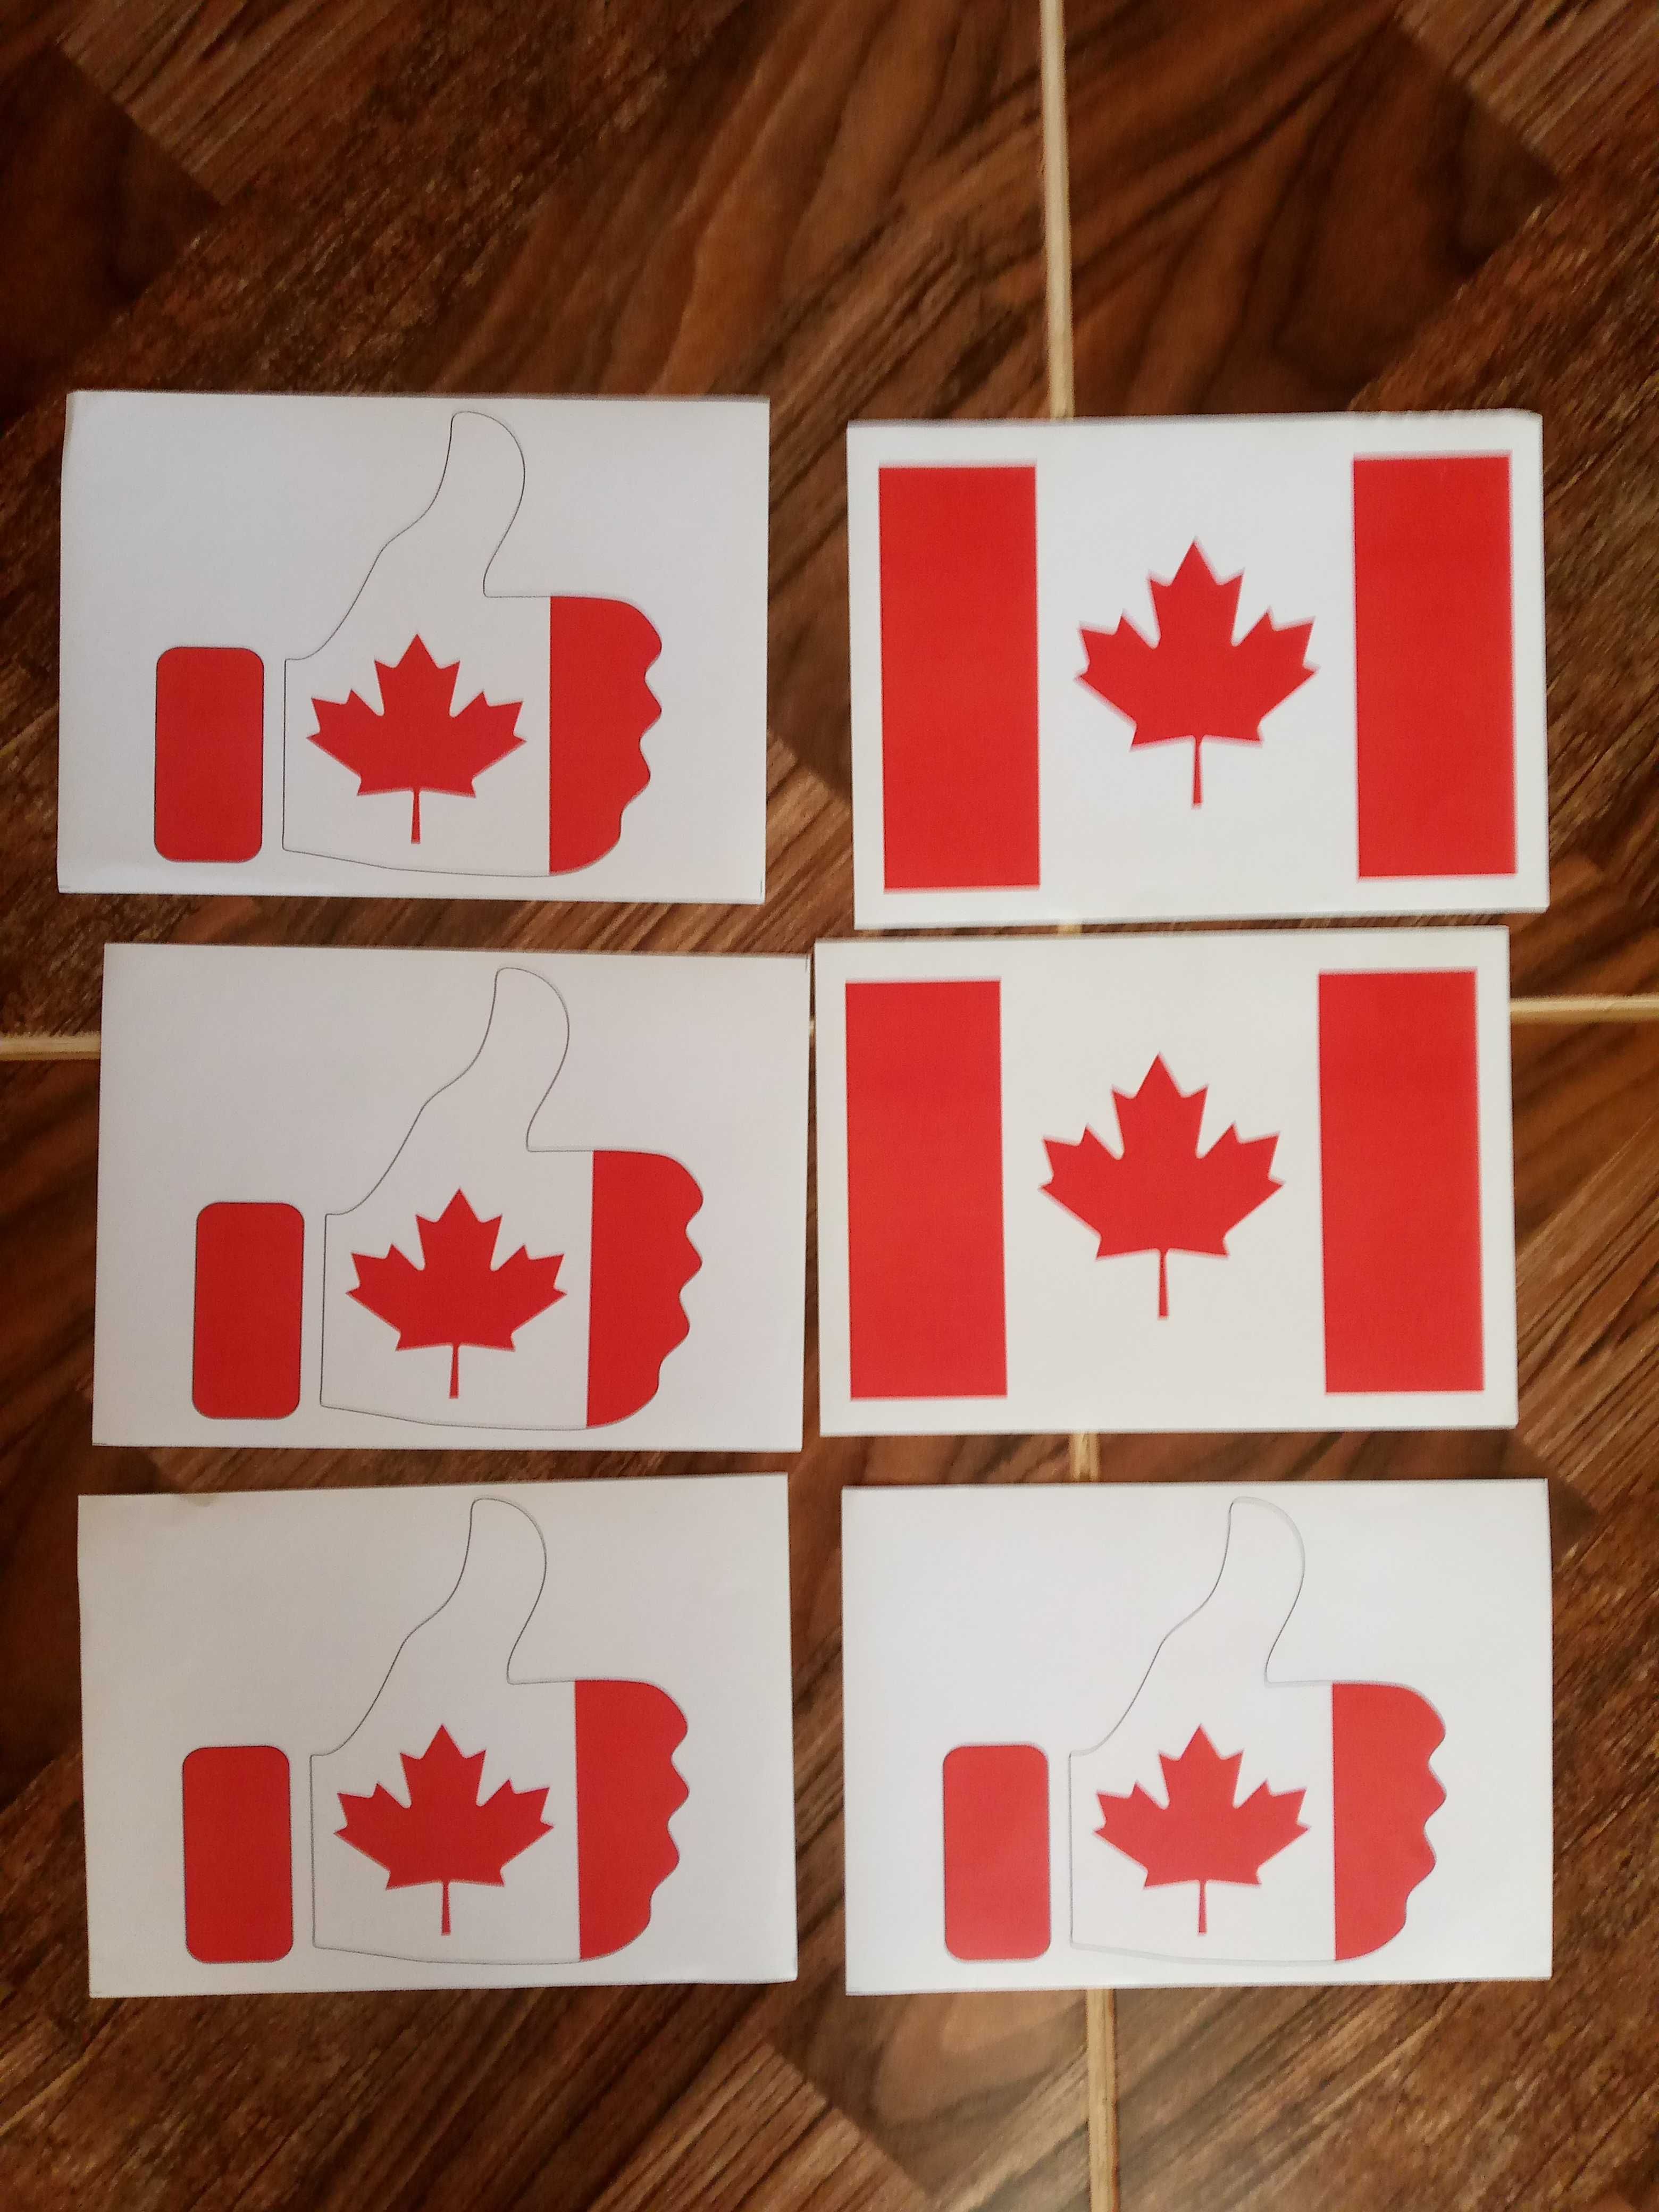 Наклейки с канадской символикой(см фото) Цена 10 тыс за все